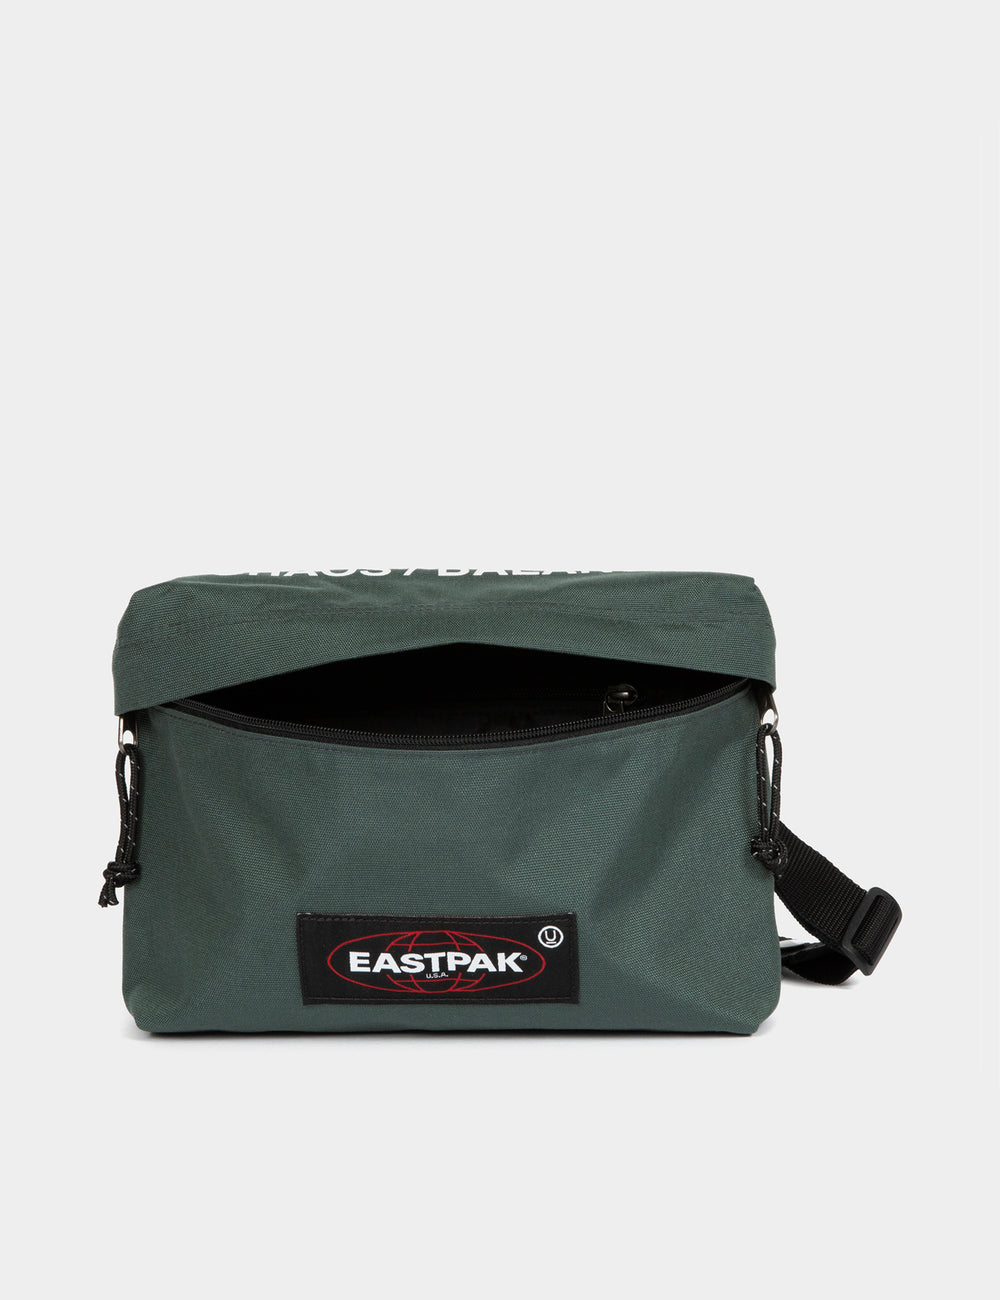 Herstellen uitstulping Opname Eastpak x Undercover Crossbody Bag - Khaki | Urban Excess. – URBAN EXCESS  USA